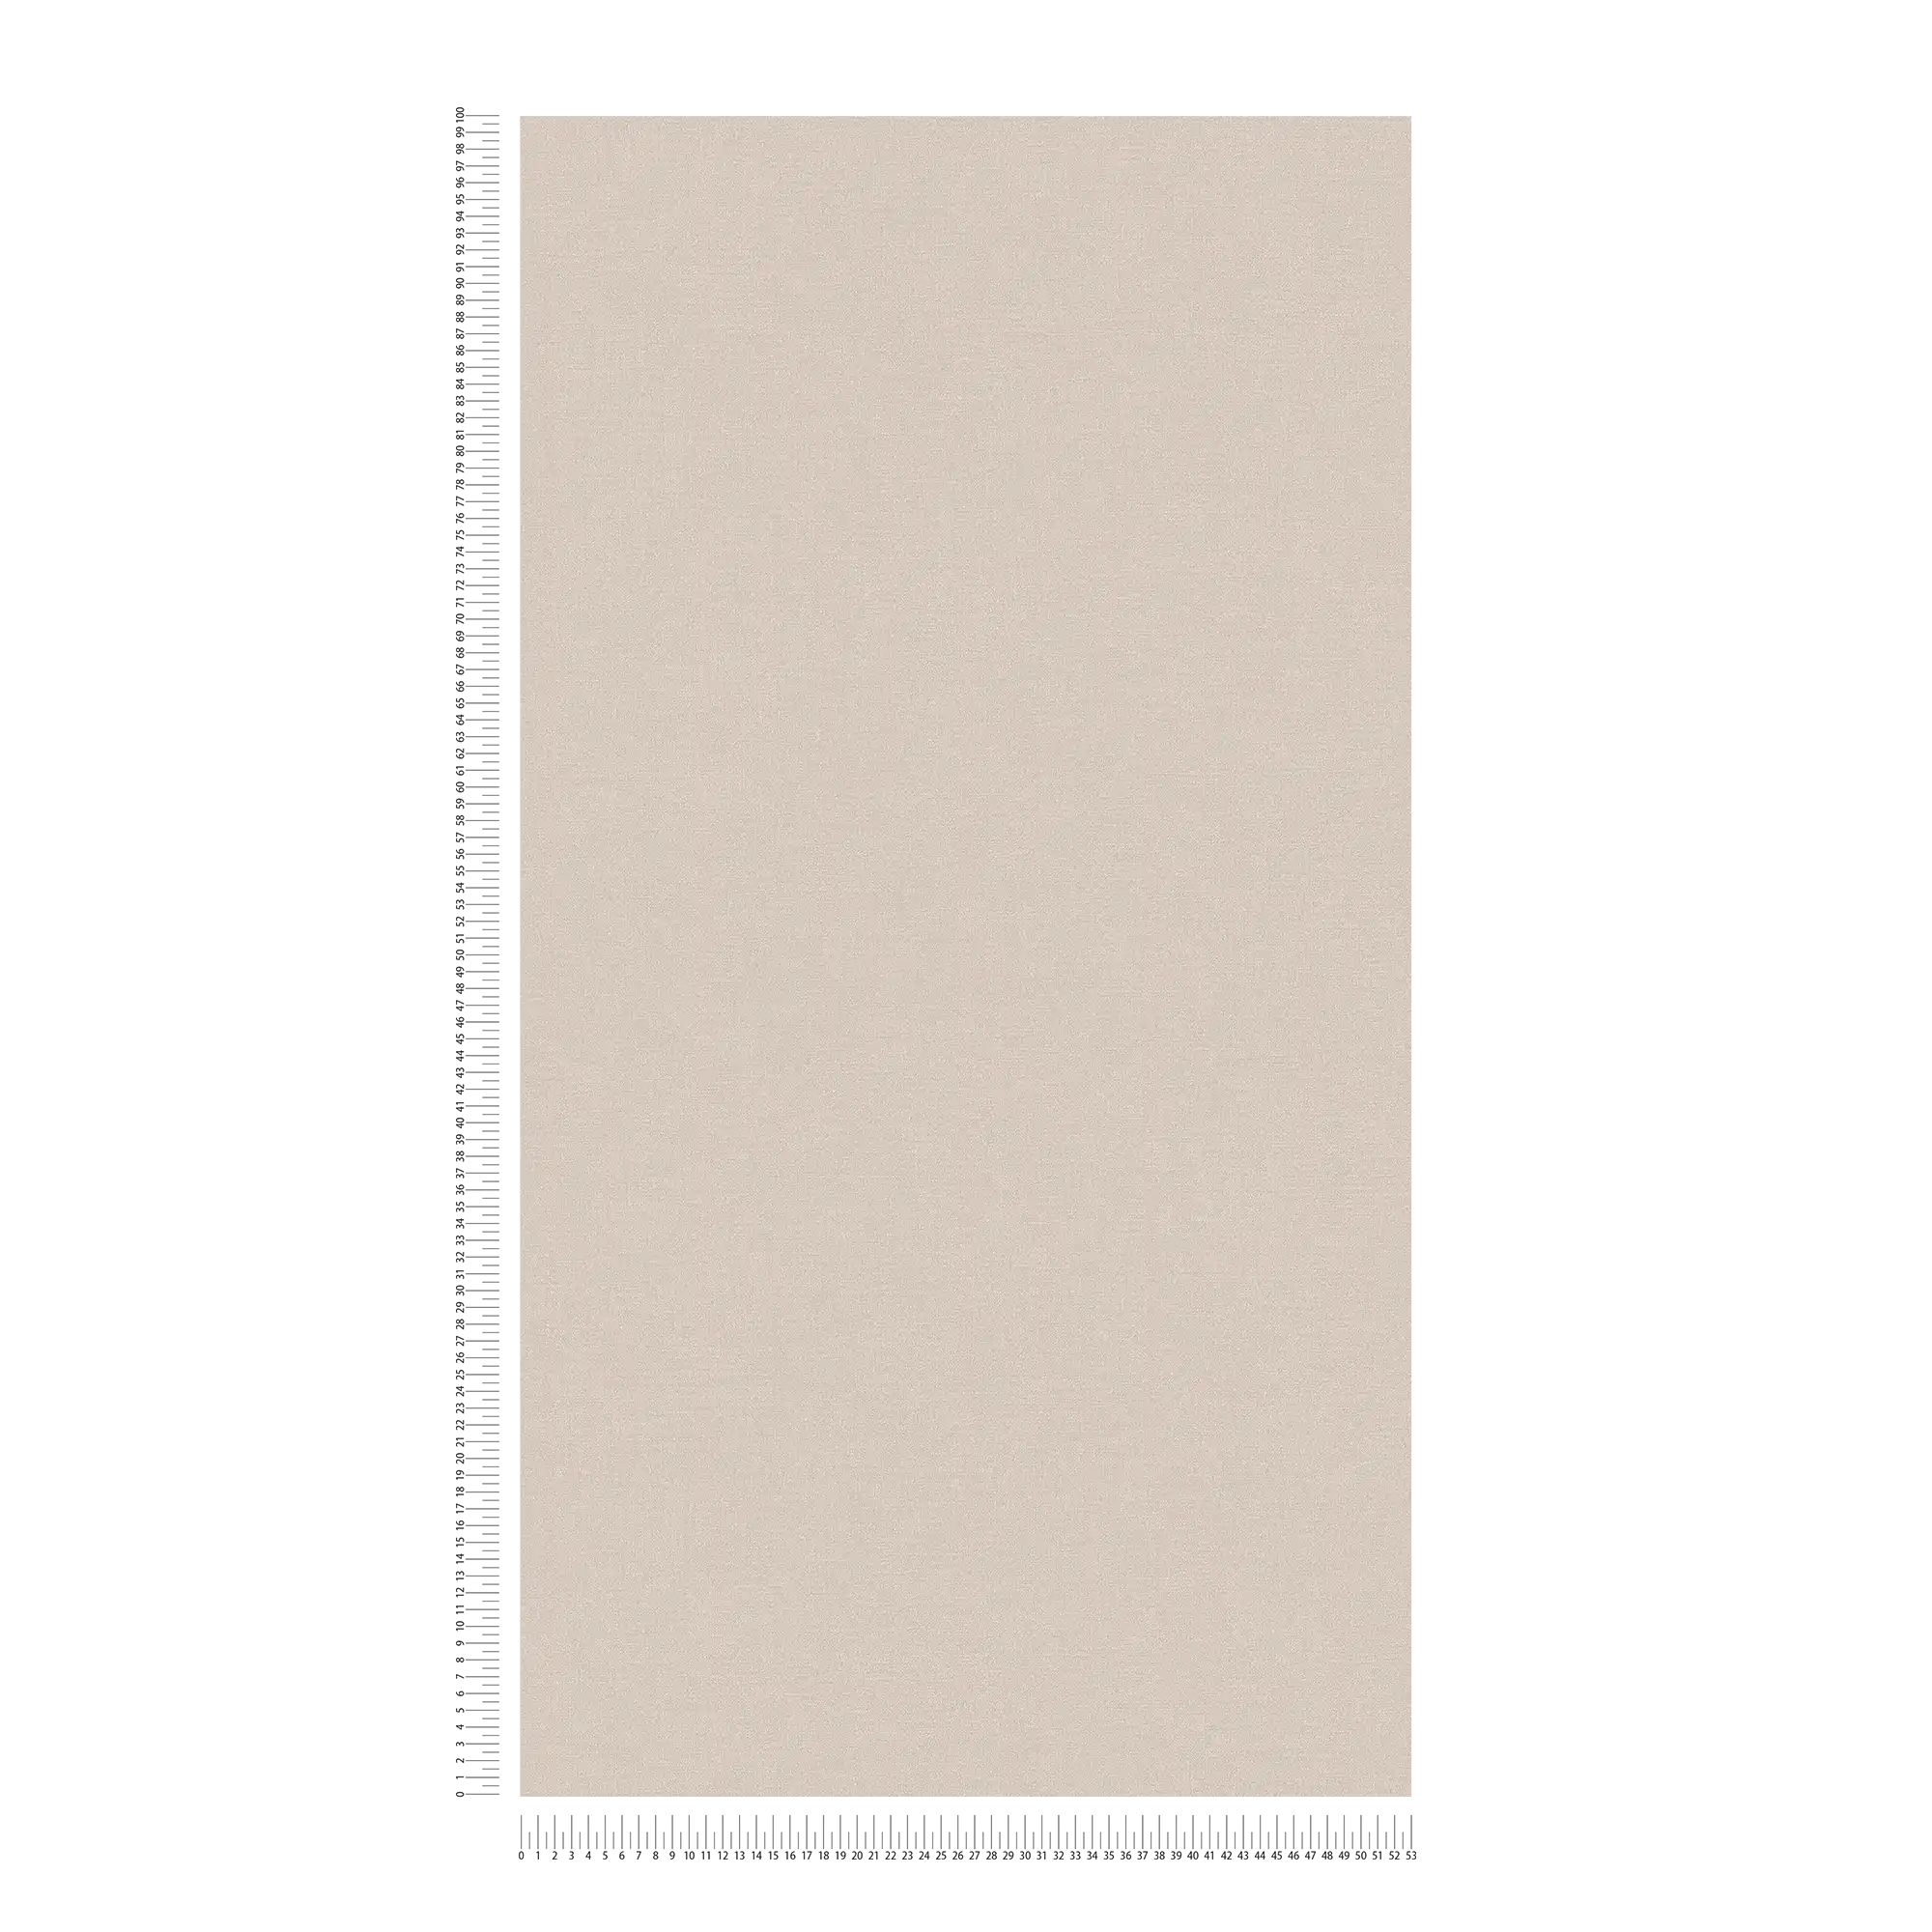             Carta da parati in tessuto non tessuto a tinta unita in colori tenui: grigio, grigio chiaro.
        